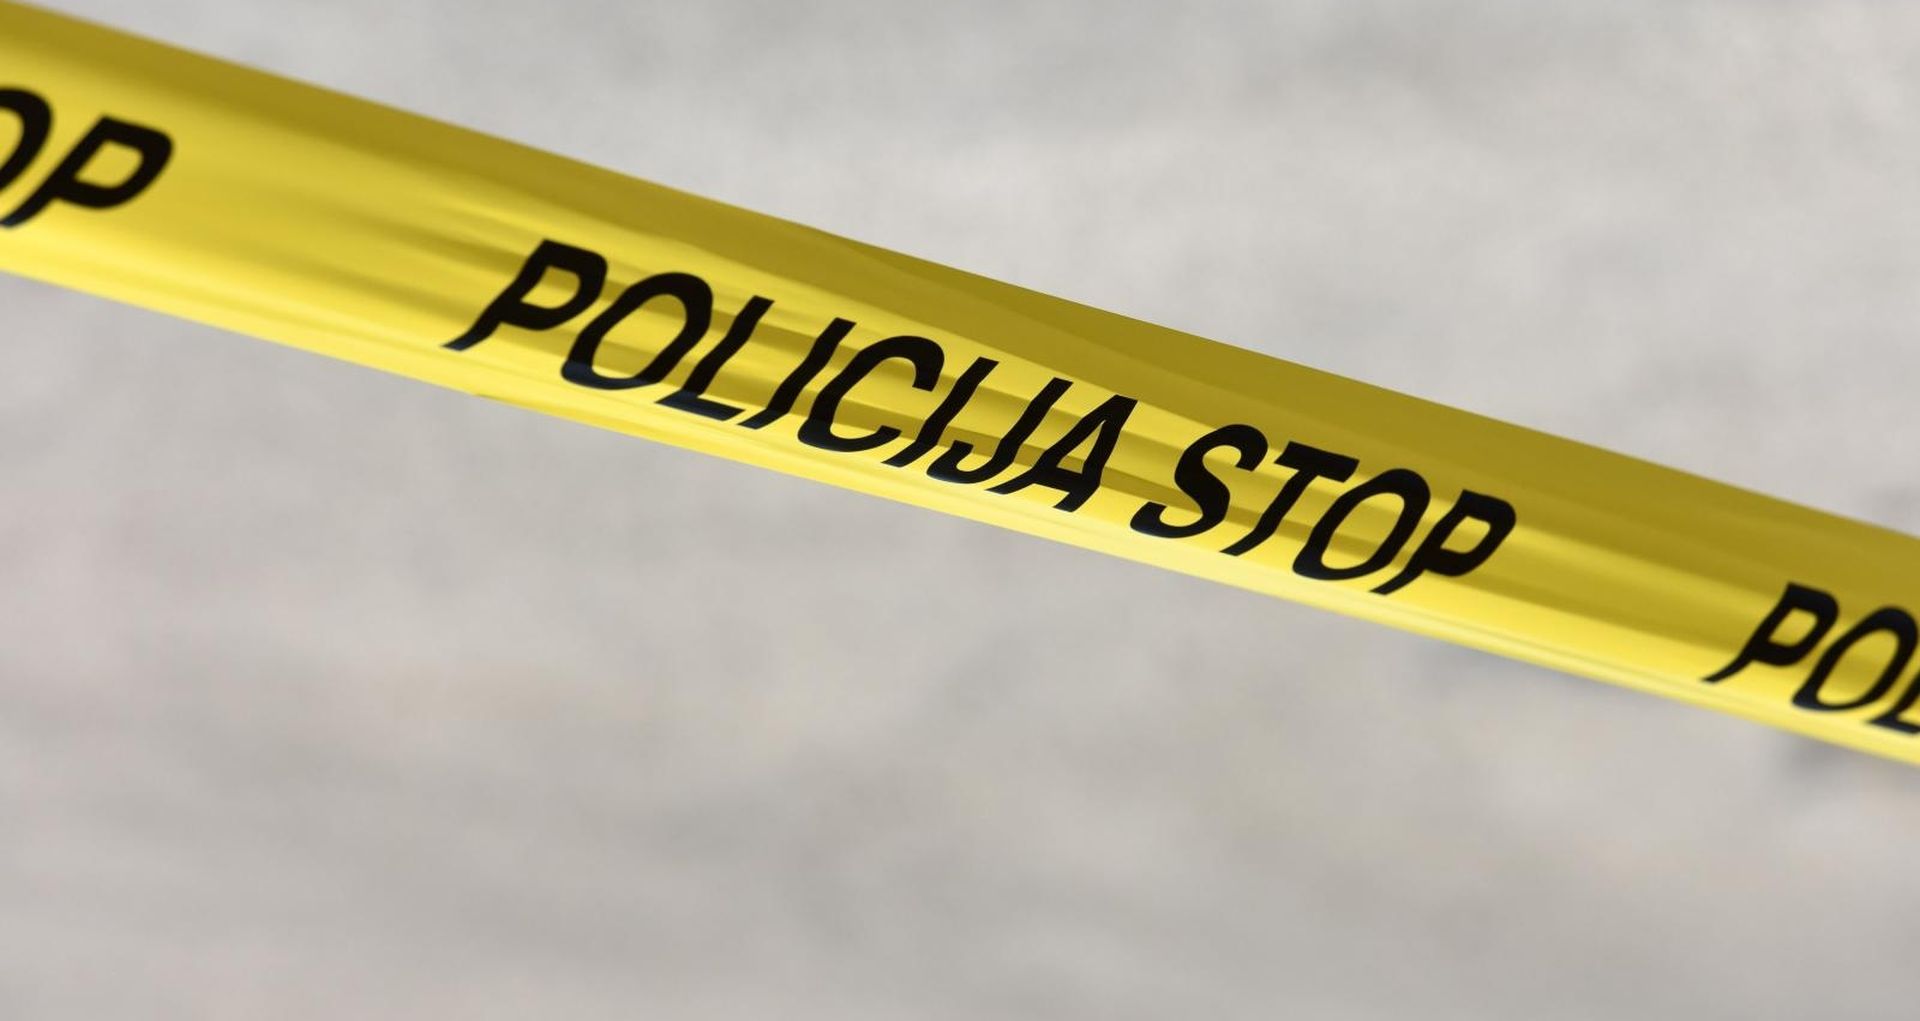 Livno: Policija Bosne i Hercegovine 24.07.2018., Livno, Bosna i Hercegovina - Policijska traka. Photo: Hrvoje Jelavic/PIXSELL